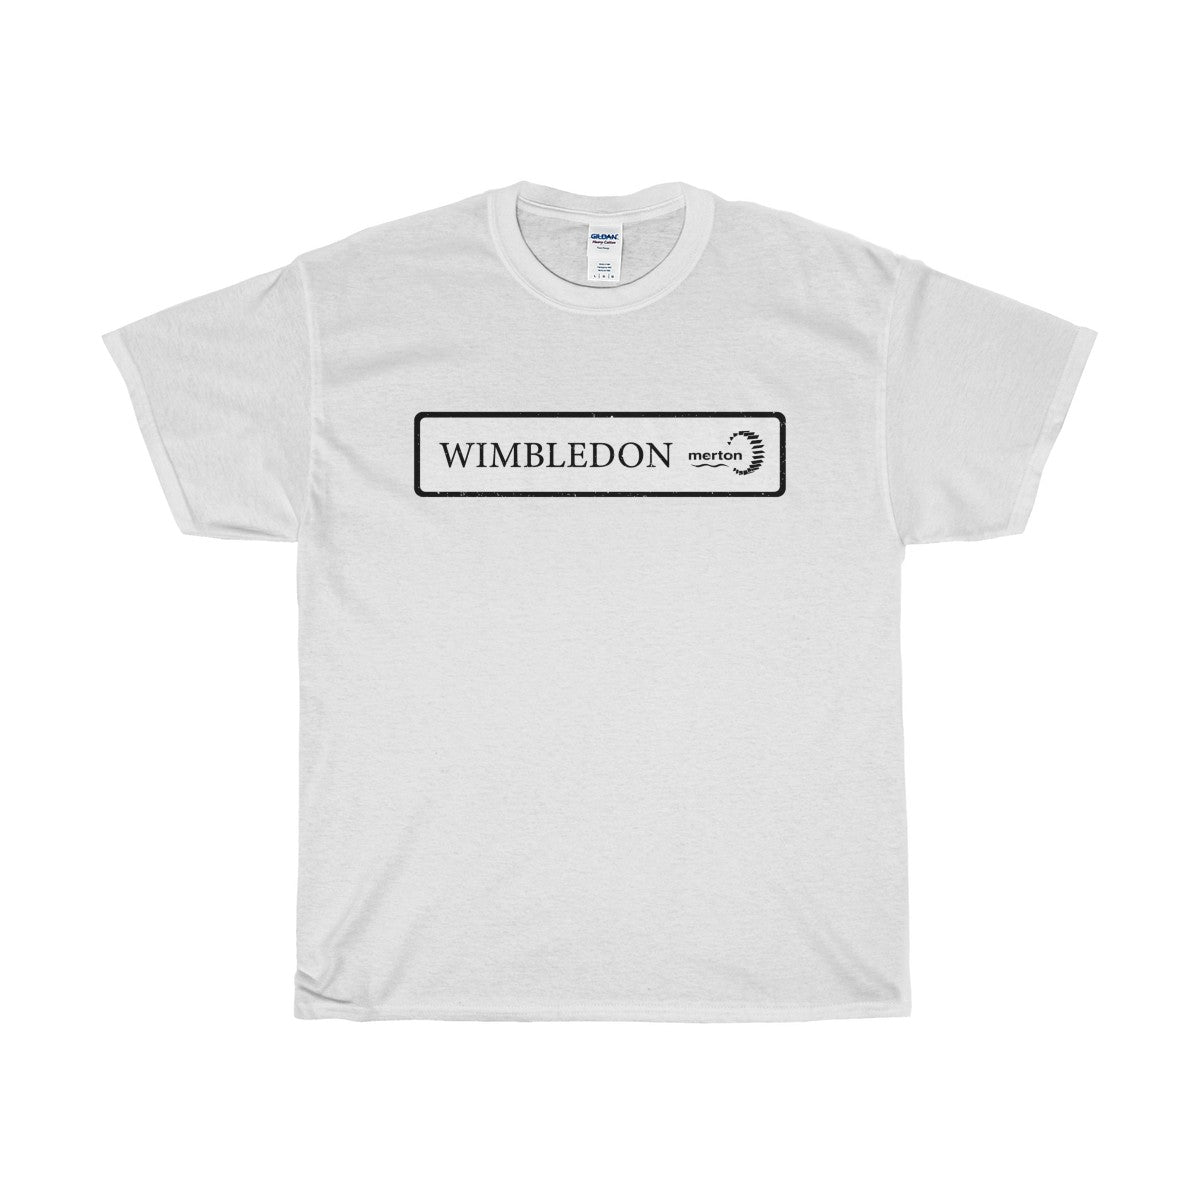 Wimbledon Road Sign T-Shirt